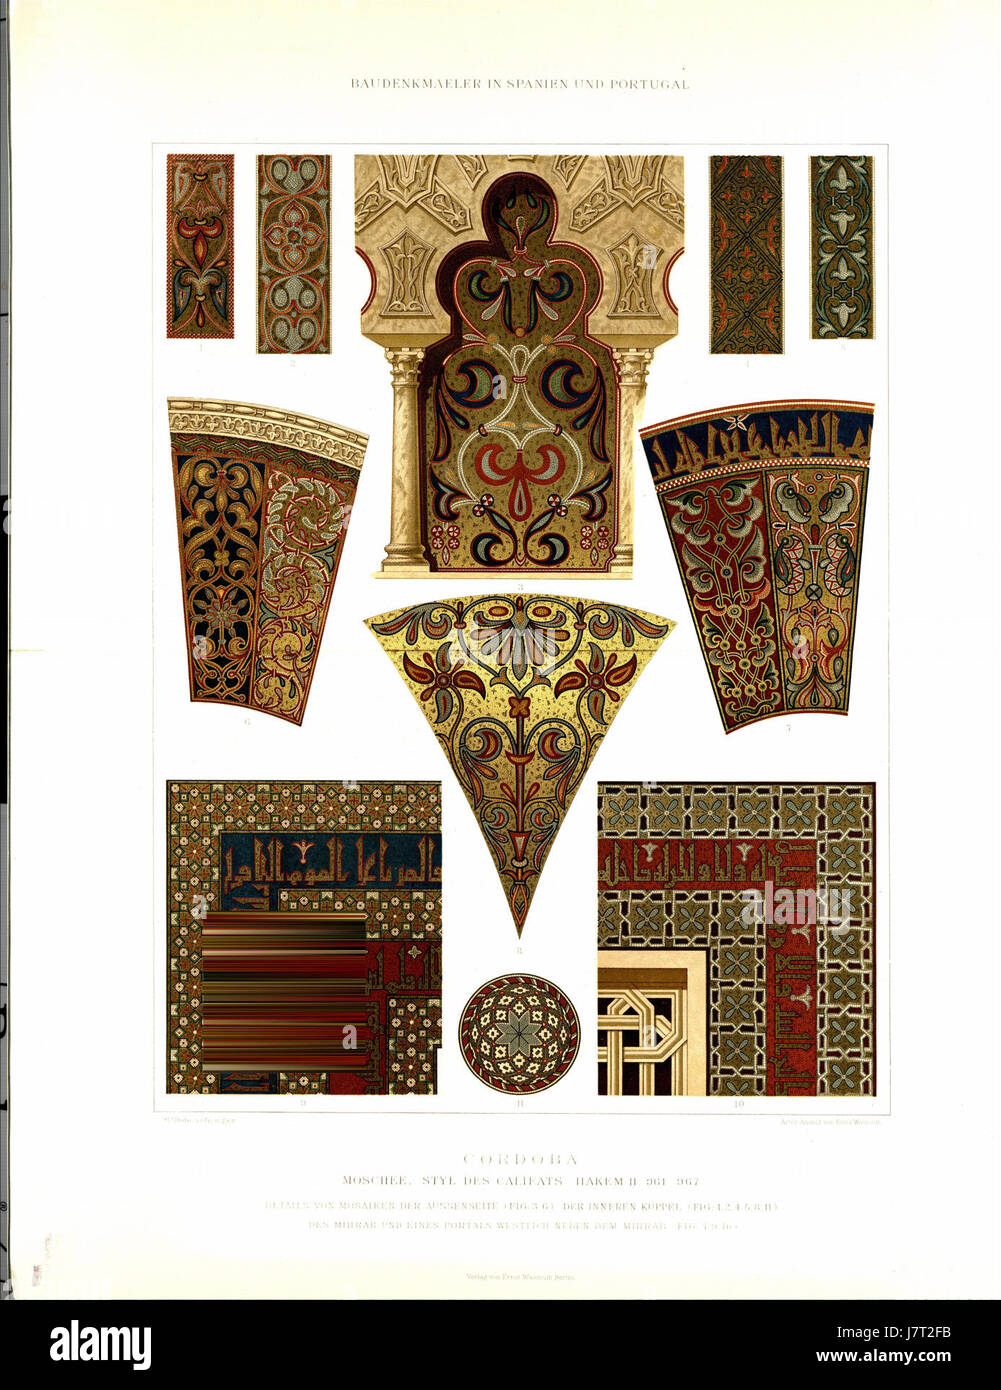 026 029 Cordoba Farbige Details von Mosaiken in der Moschee Stock Photo